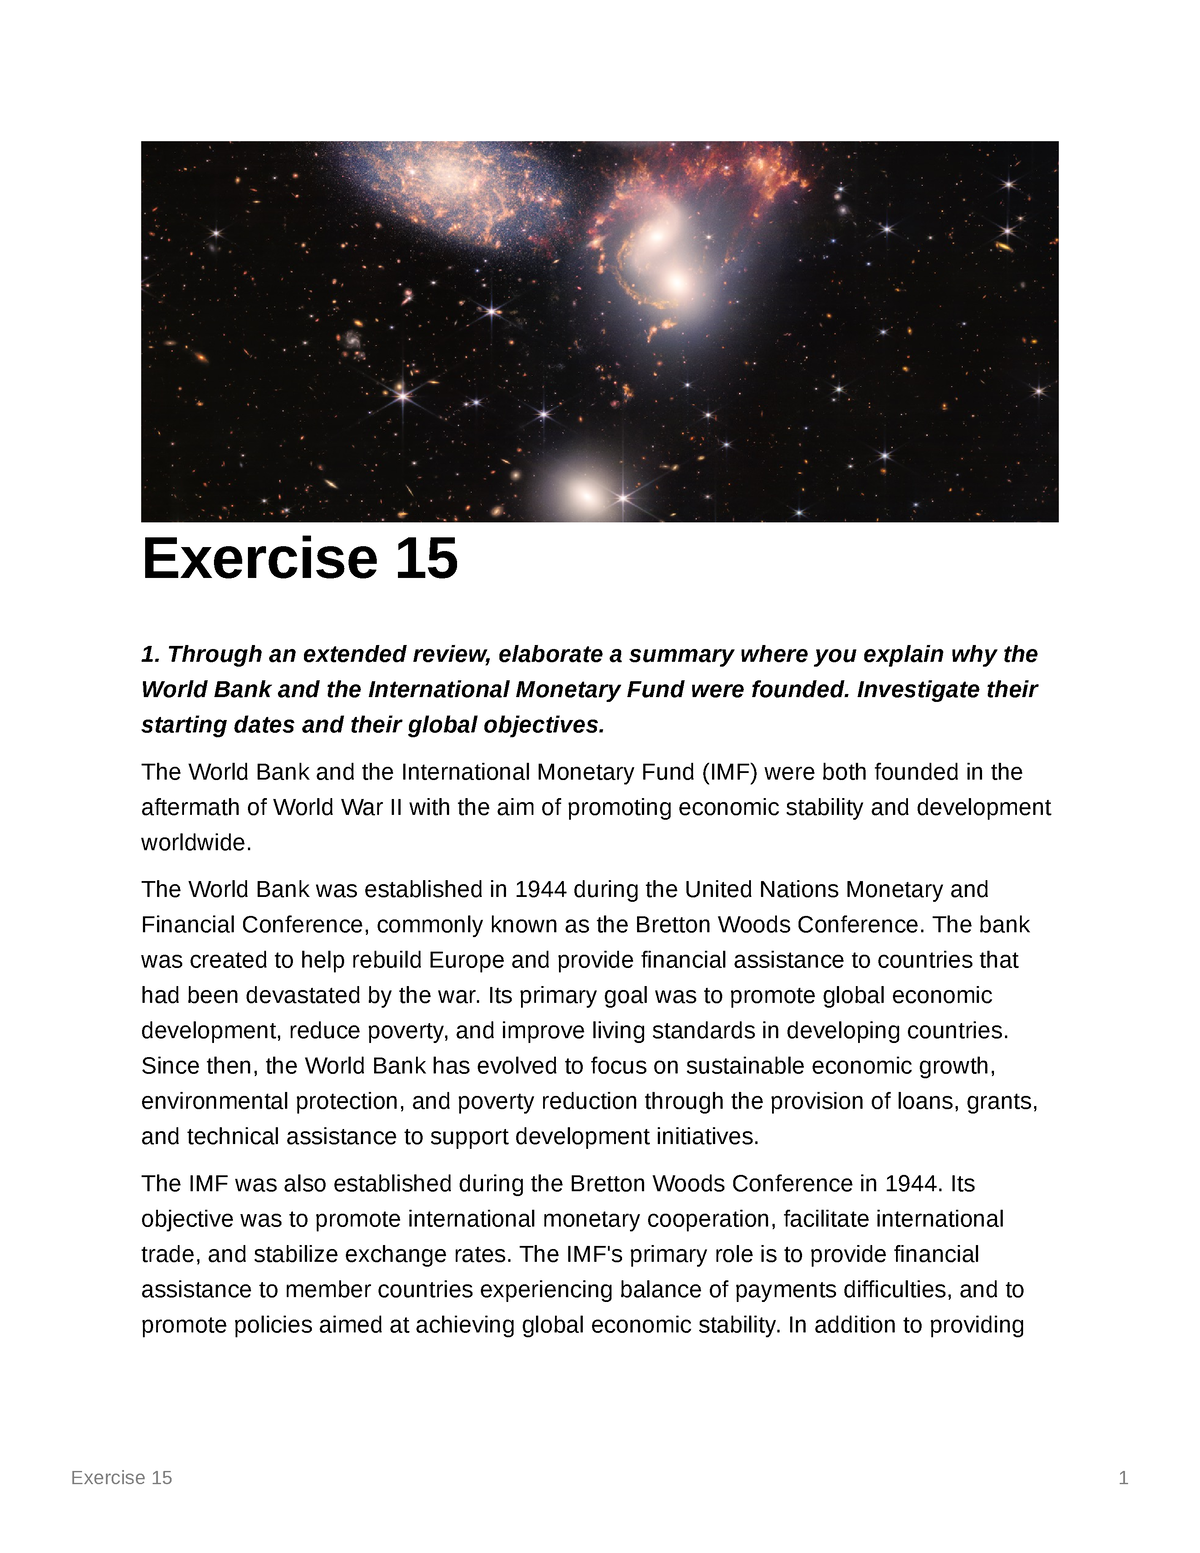 Exercise 15 contemporary world - Exercise 15 1 Exercise 15 Through an ...